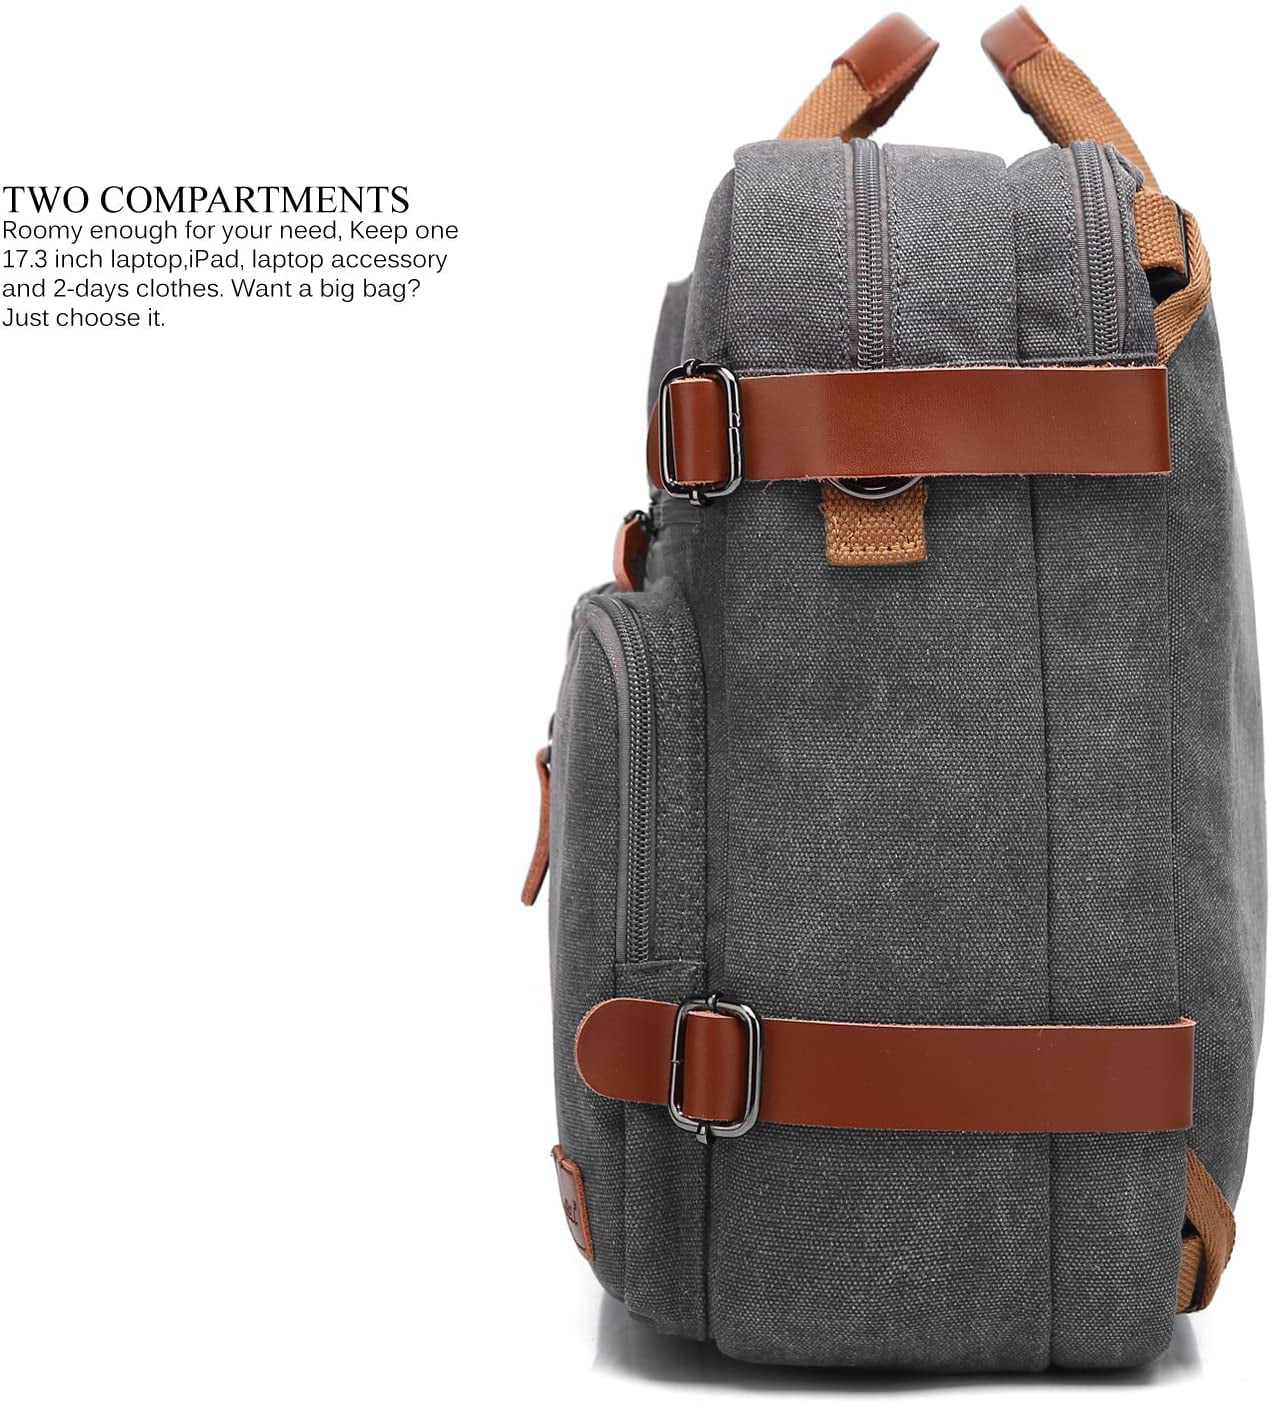 CoolBELL Convertible Backpack Messenger Bag Shoulder bag Laptop Case Handbag Business Briefcase Multi-functional Travel Rucksack Fits 17.3 Inch Black